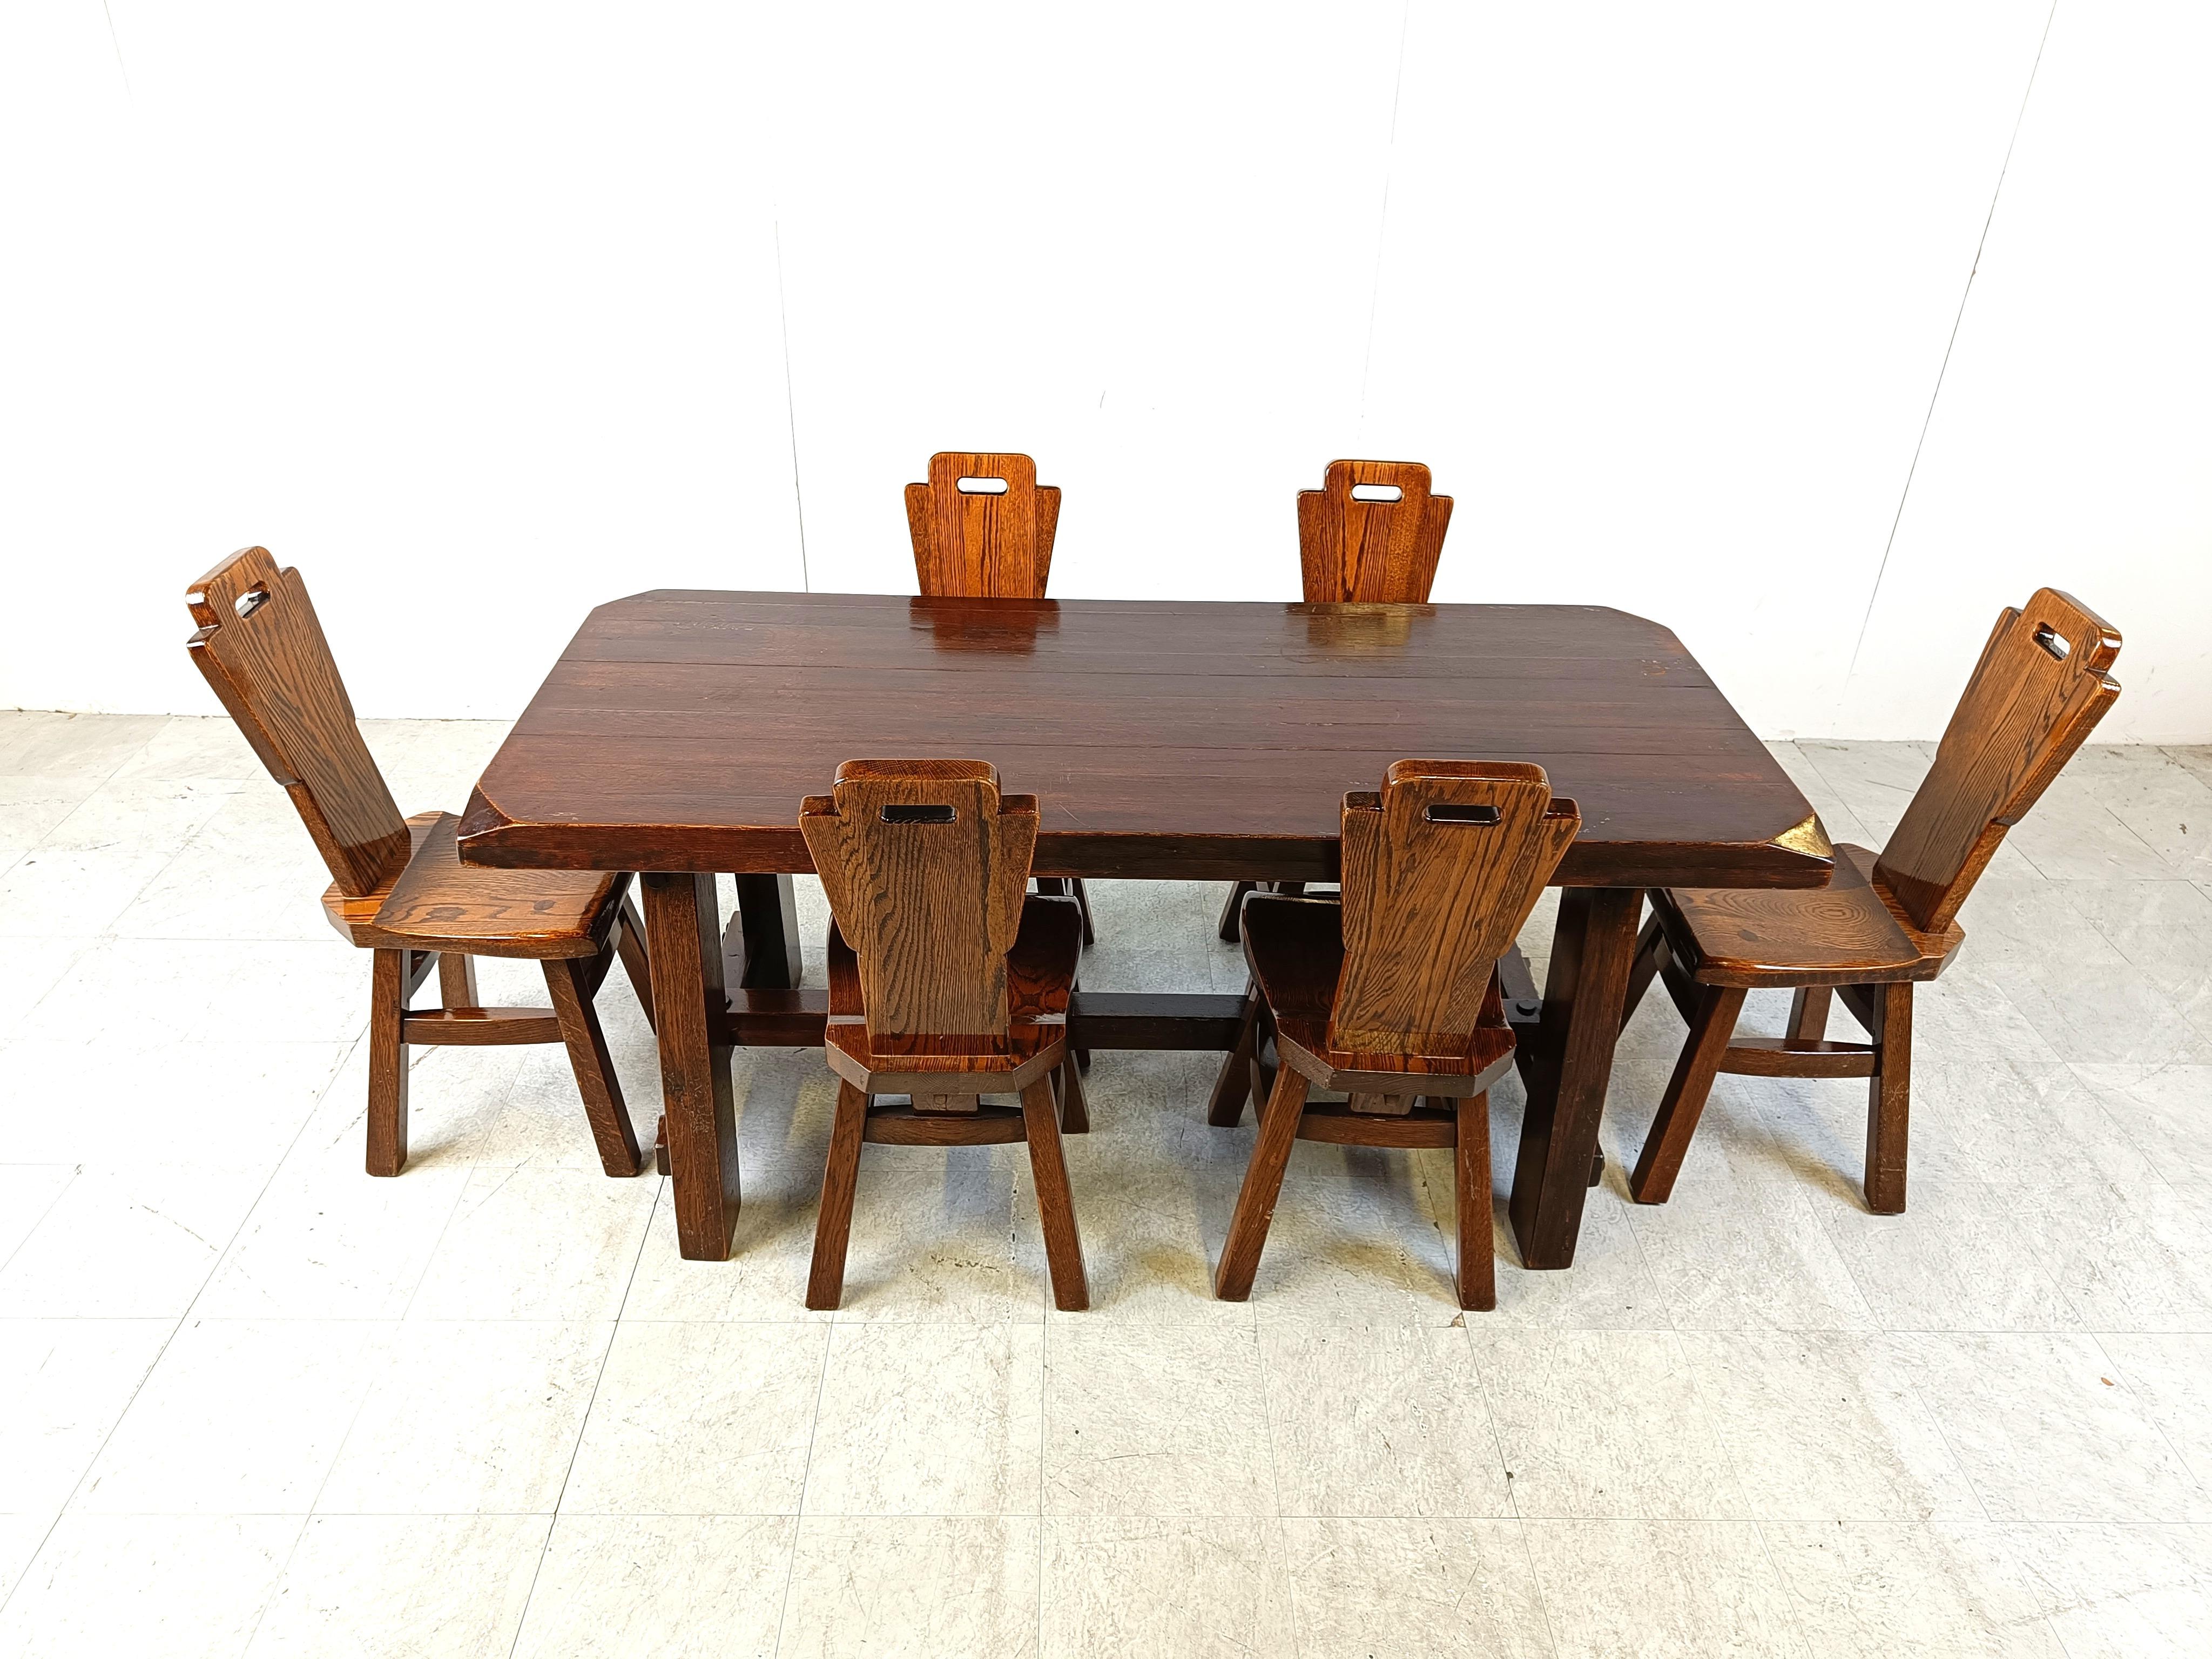 Robuste und handgefertigte Esszimmerstühle mit passendem Tisch.

Das gesamte Set ist aus massivem Eichenholz gefertigt.

Diese Stühle und der Tisch werden lange halten.

Guter Zustand.

1960er Jahre - Belgien

Abmessungen:

Tabelle:
Höhe: